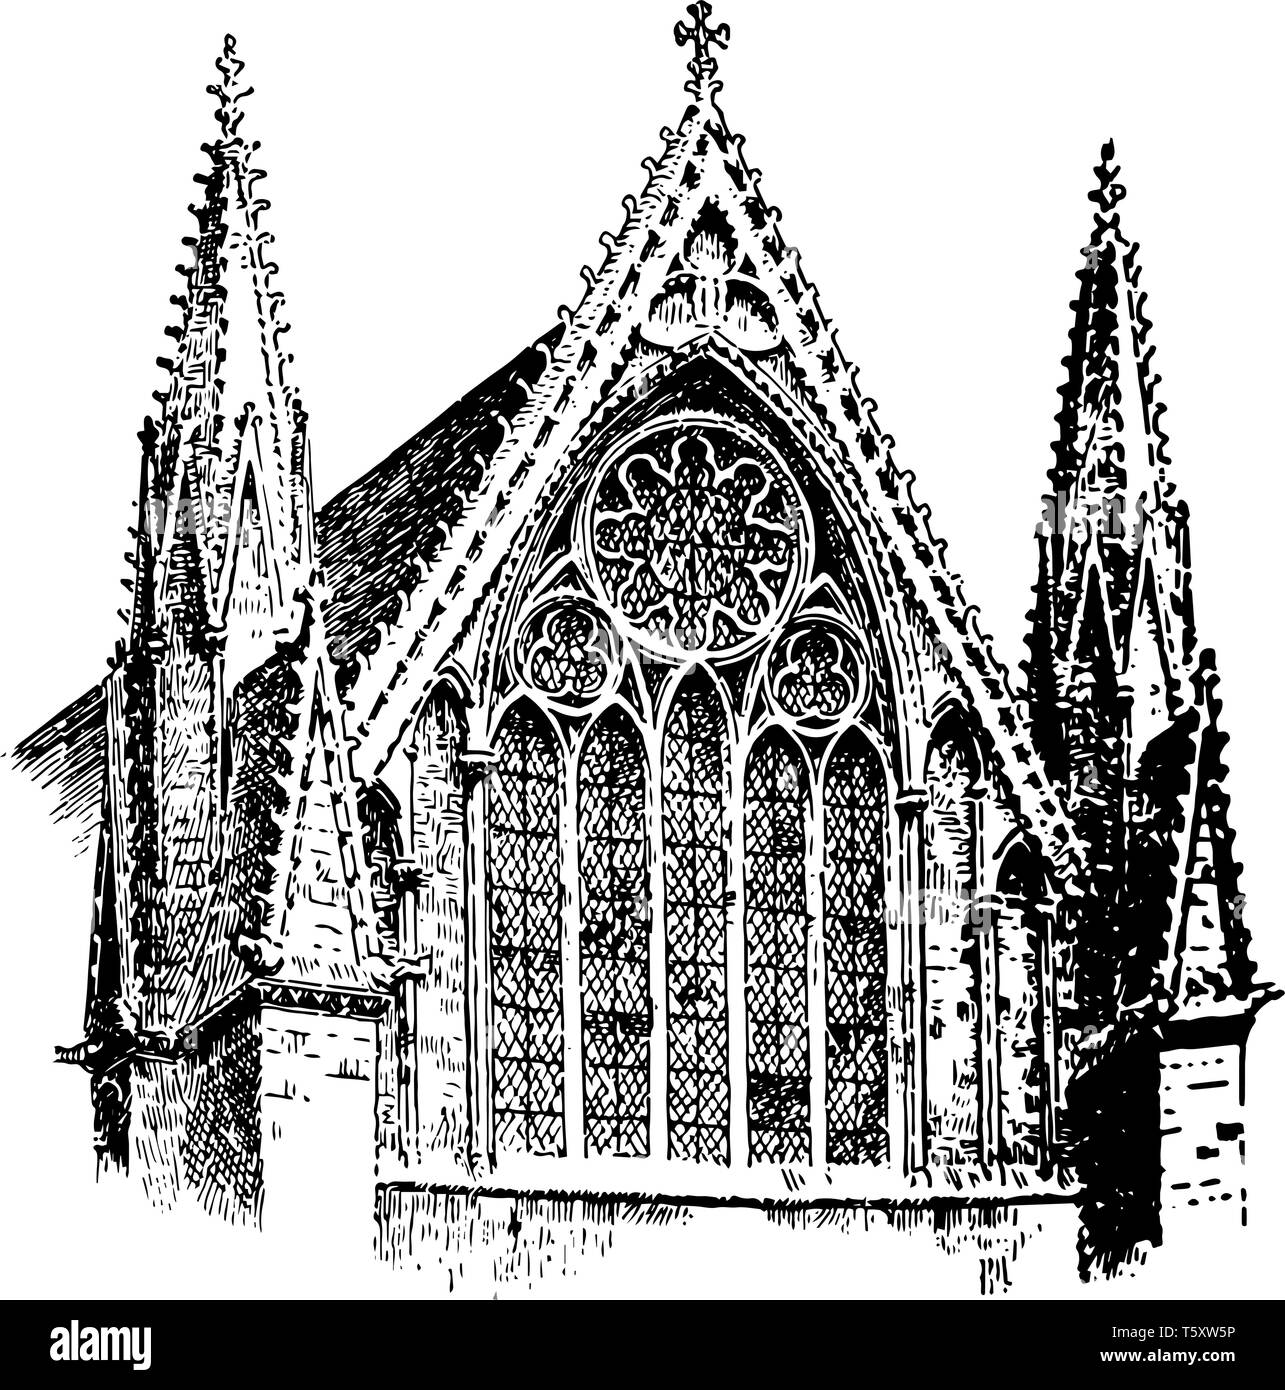 Die Kathedrale von Lincoln, der Seligen Jungfrau Maria von Lincoln, geometrischen Stil der gotischen Kathedrale, Canterbury, England, vintage Strichzeichnung oder Gravur il Stock Vektor